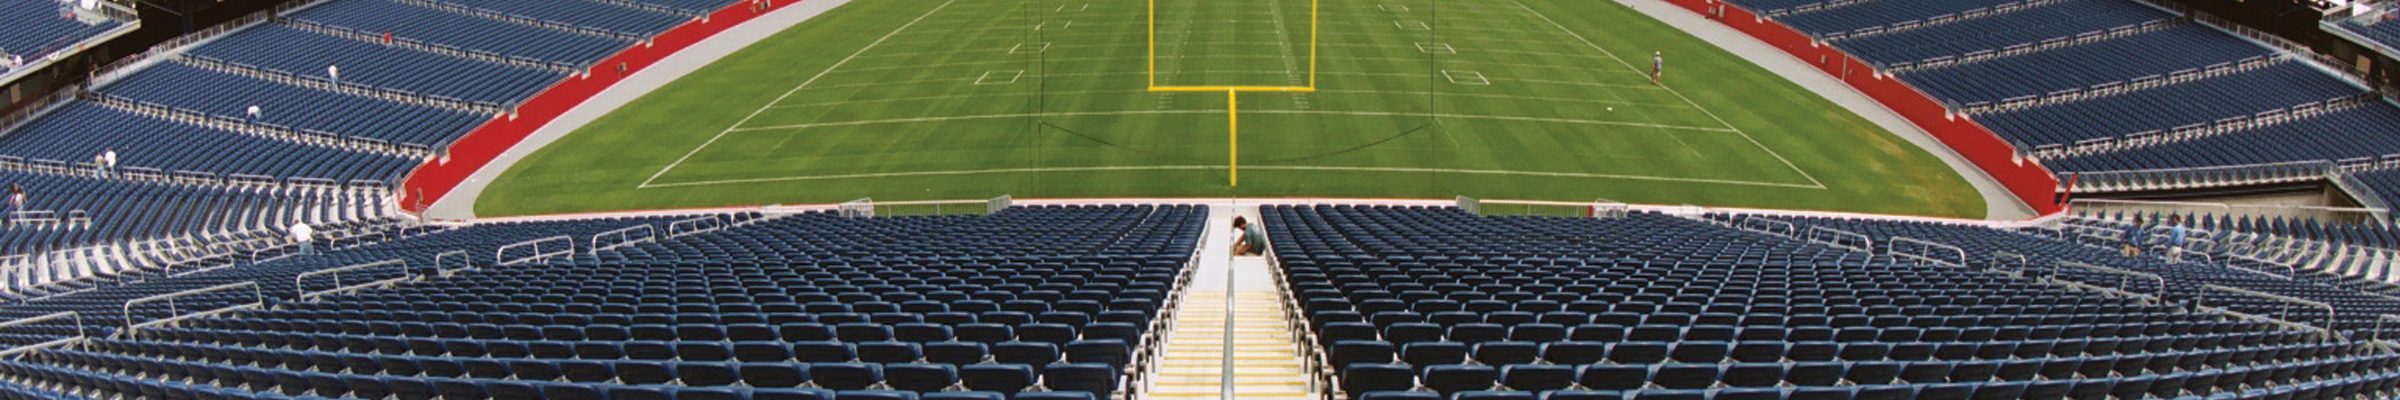 Gillette Stadium spectator seating